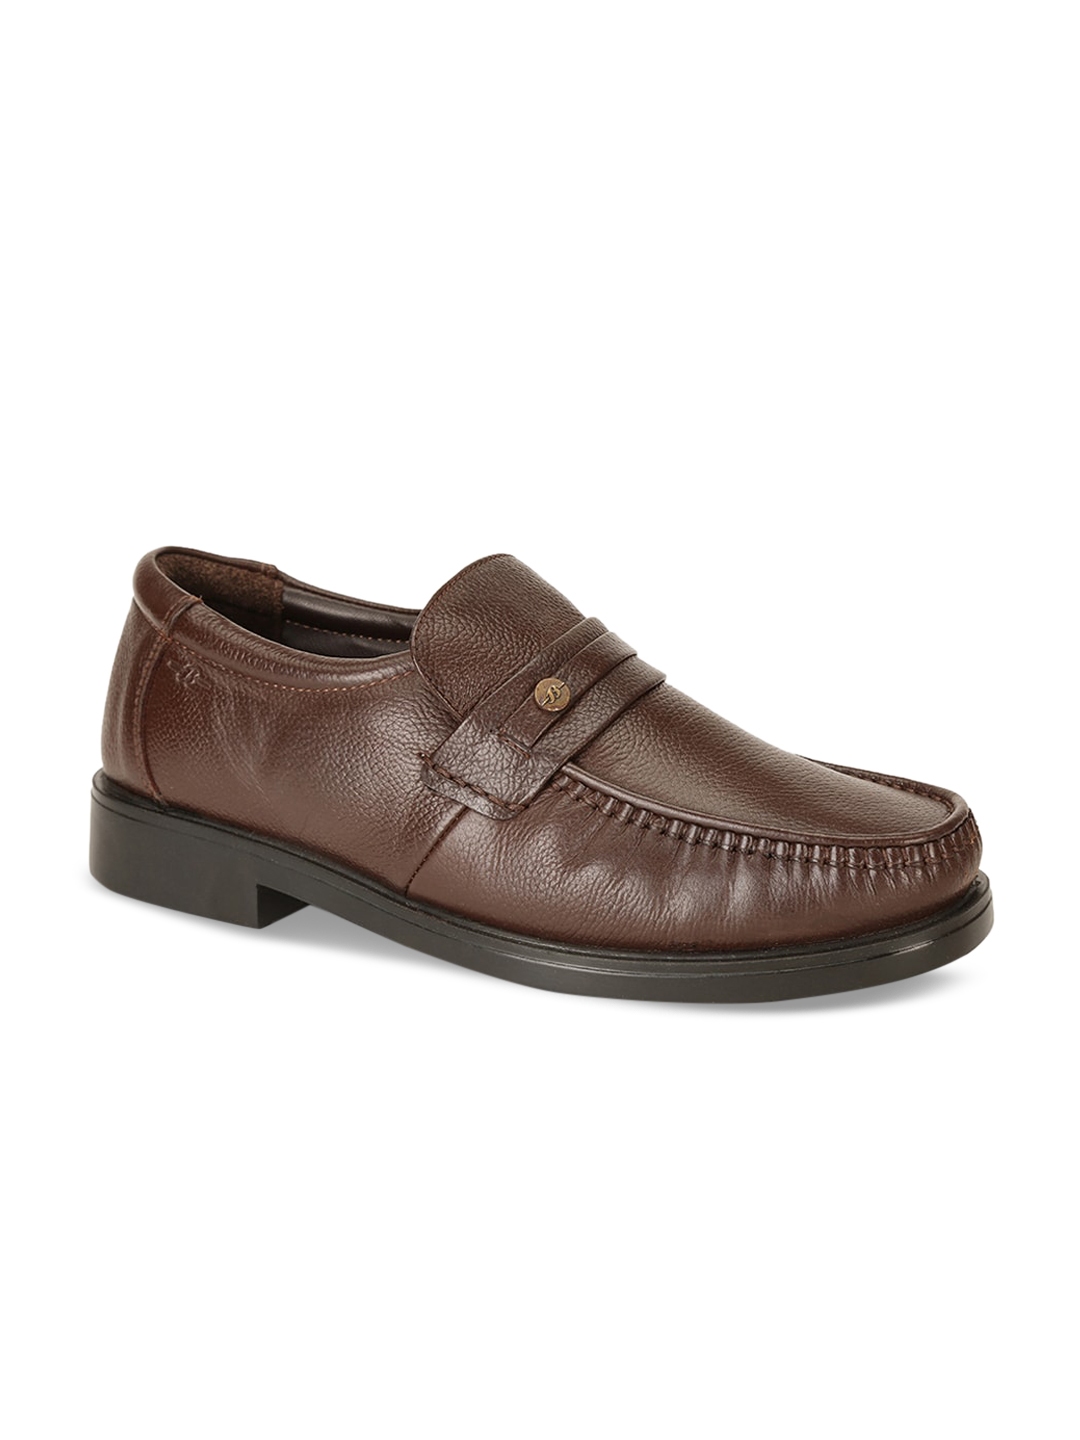 Buy Bata Men Brown Solid Leather Formal Loafers - Formal Shoes for Men ...